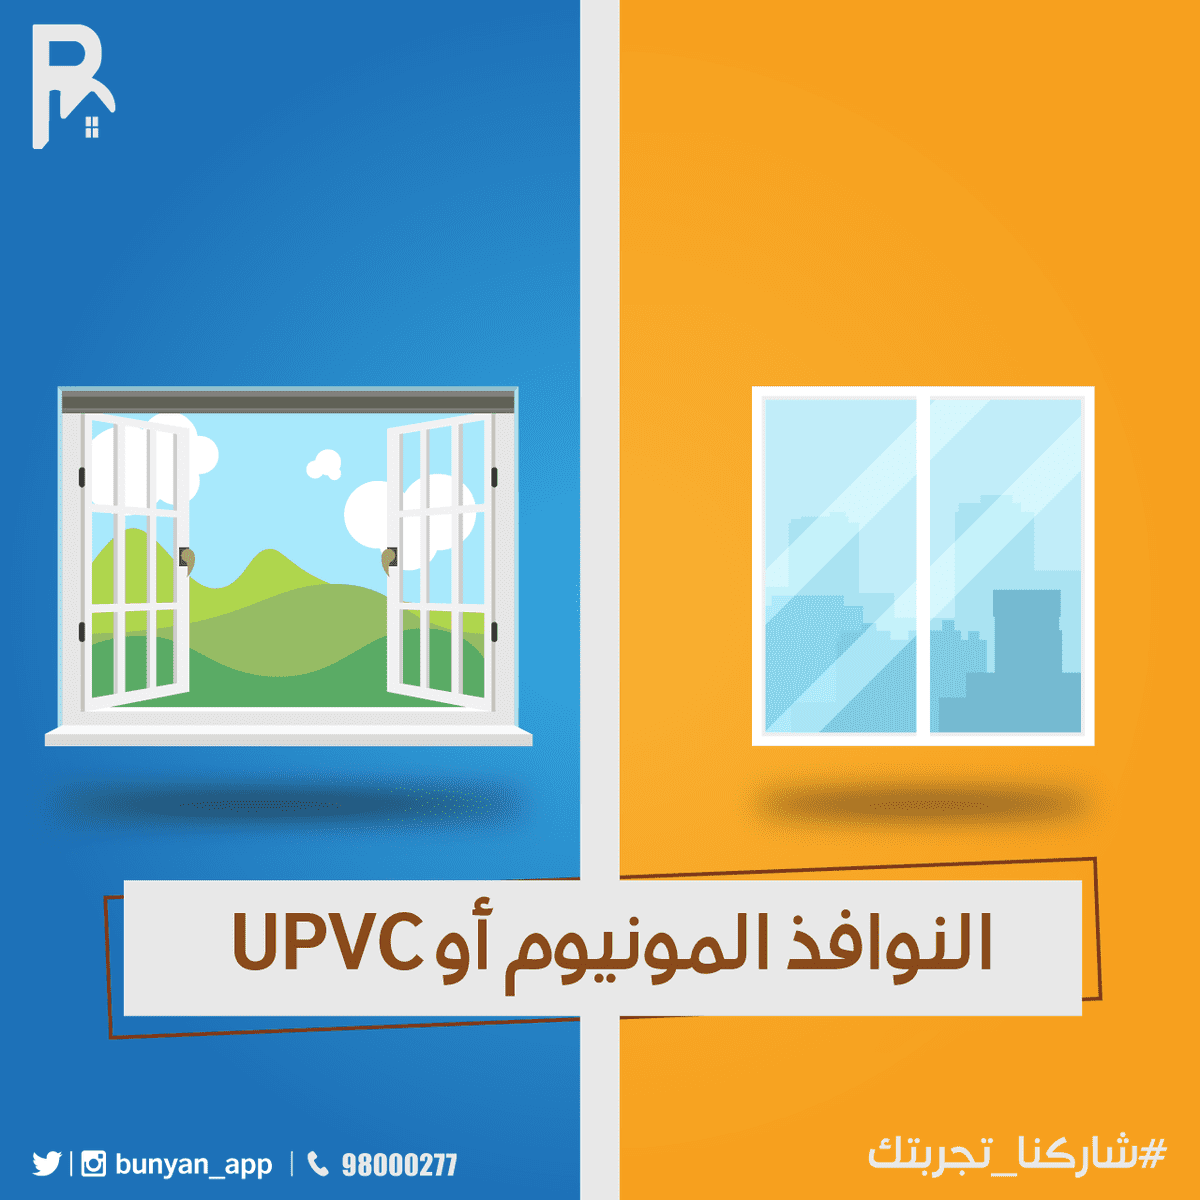 النوافذ-المنيوم-او-UPVC